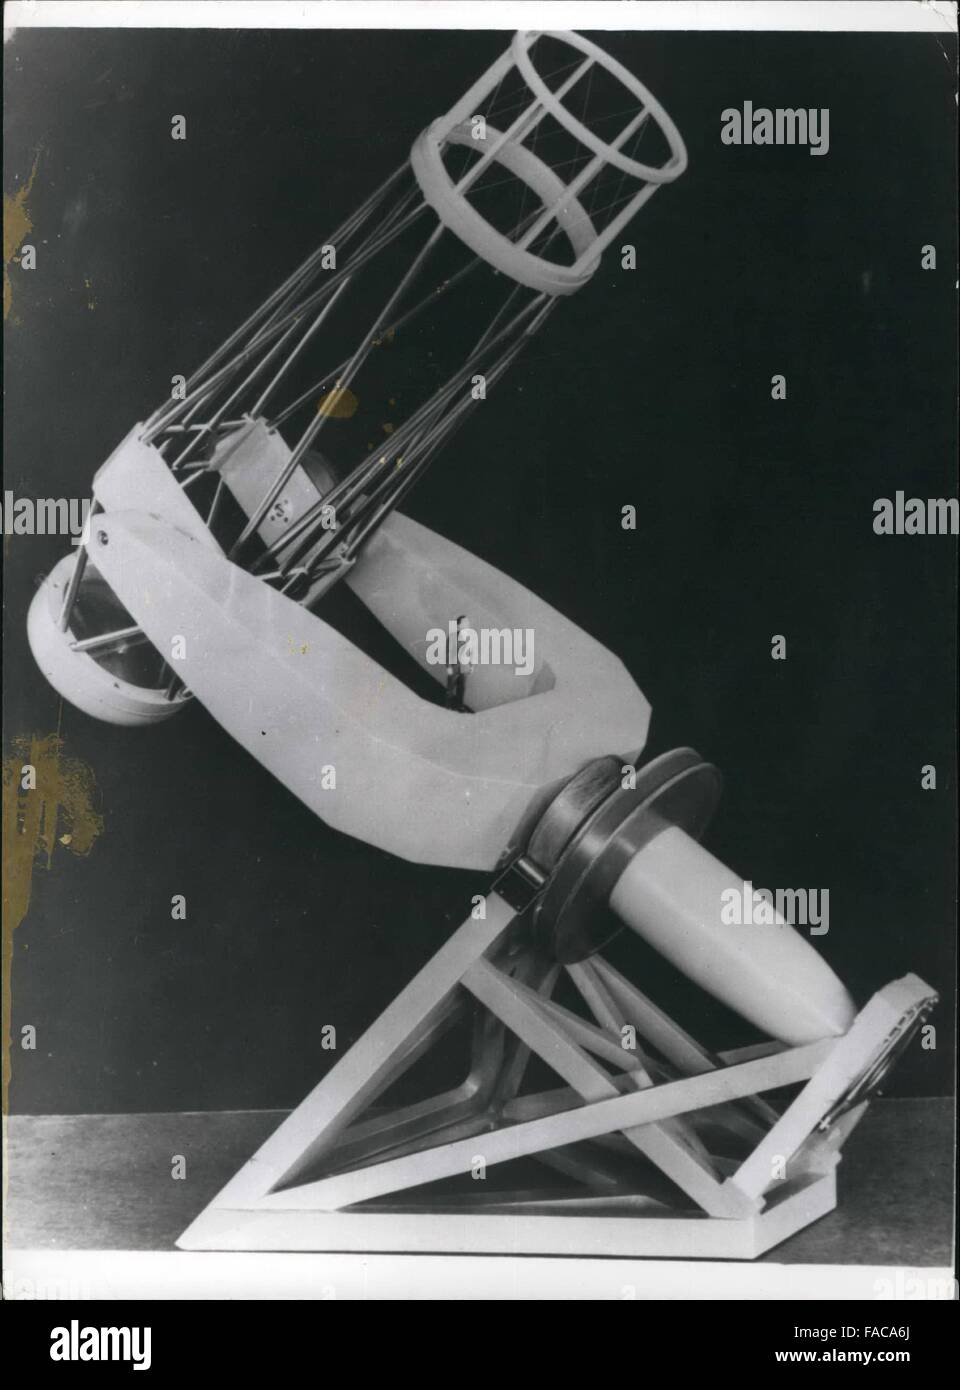 1972 - Modelo de la segunda más grande del mundo el telescopio: La  fotografía muestra un modelo a escala 1/16 de la segunda más grande del  mundo con un telescopio reflector de